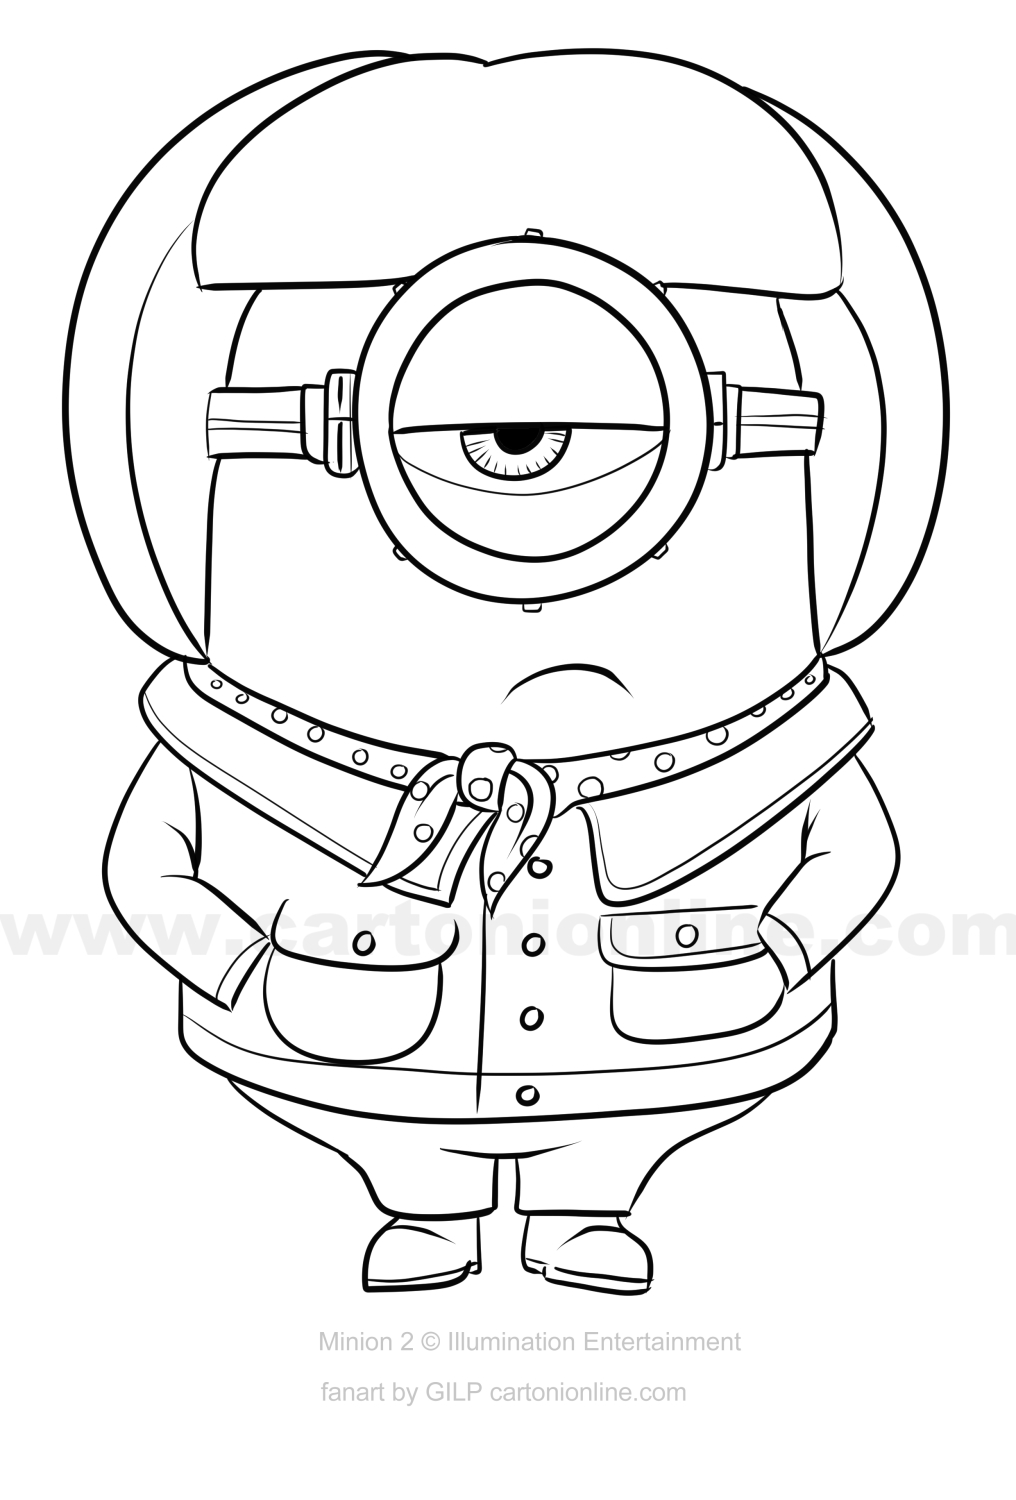 Zeichnung von Carl aus Minions 2 – Wie Gru beim Drucken und Ausmalen sehr böse wird